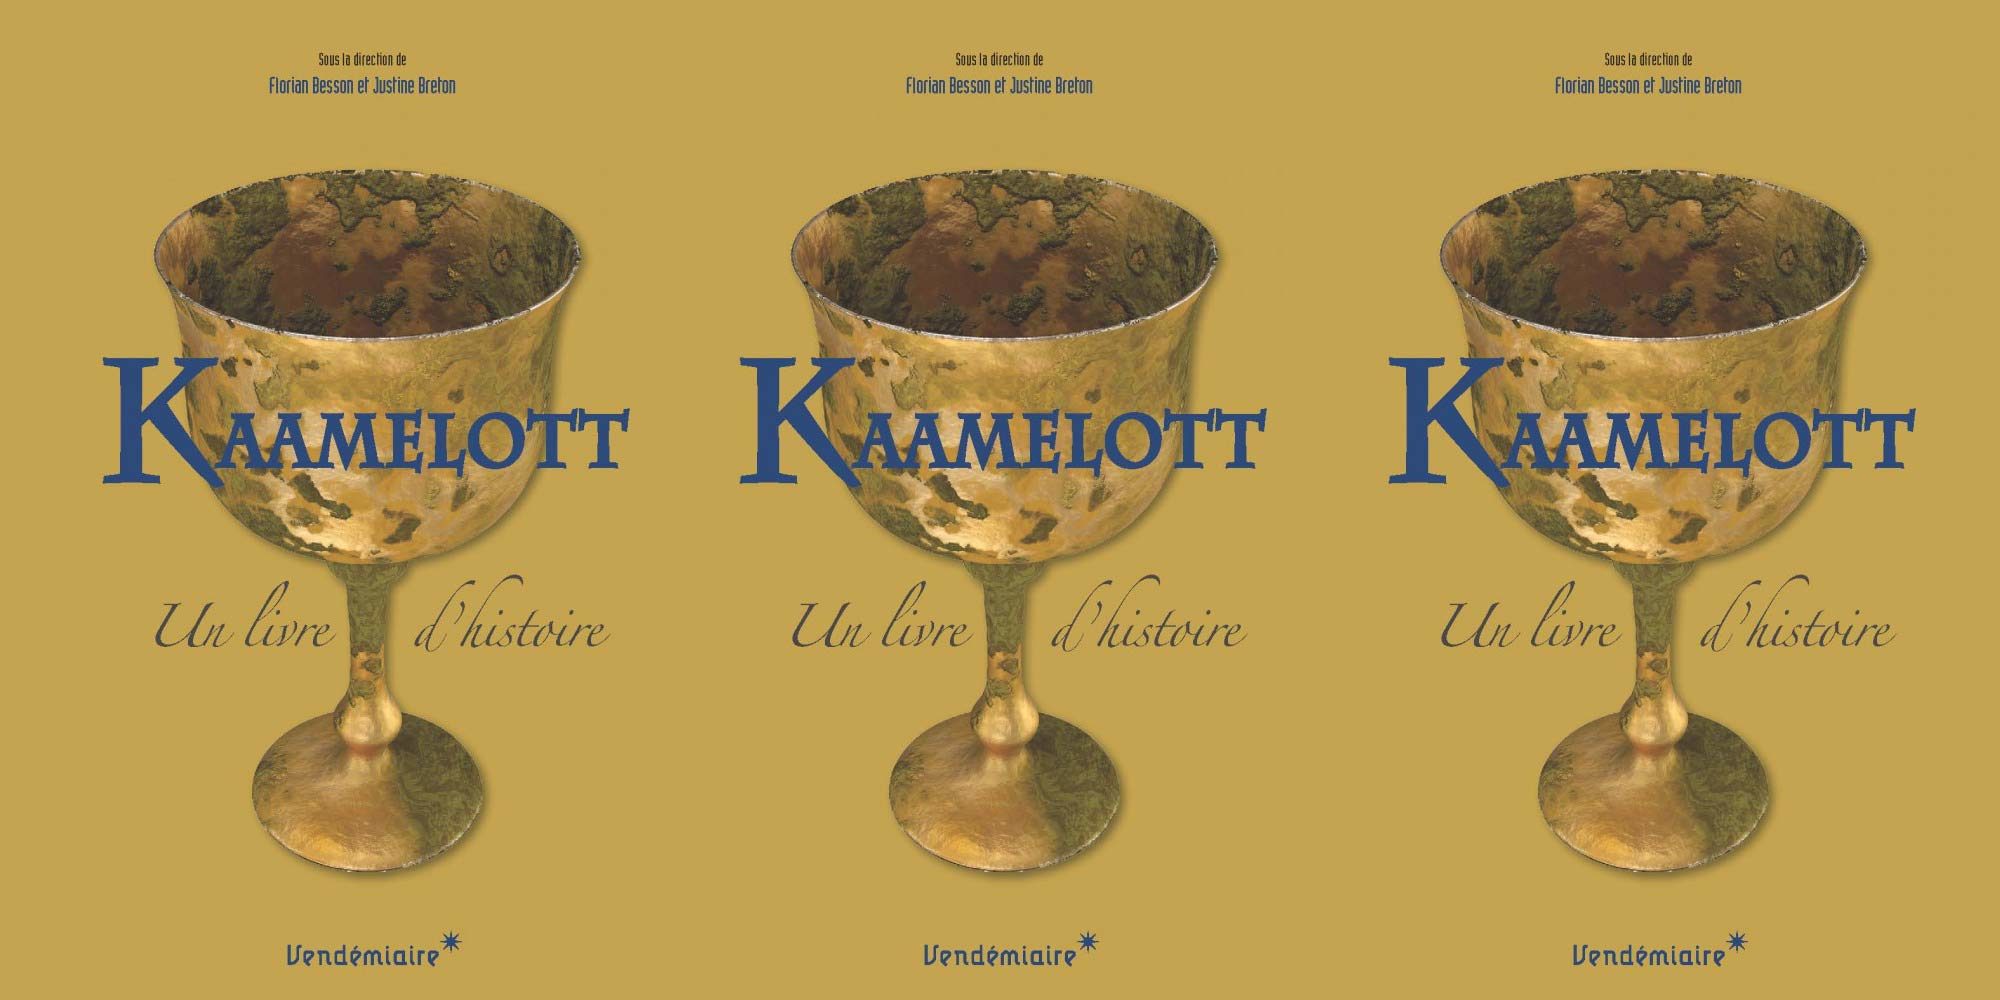 Kaamelott, un livre d'histoire, dir. Florian Besson et Justine Breton, Vendémiaire, 2018.